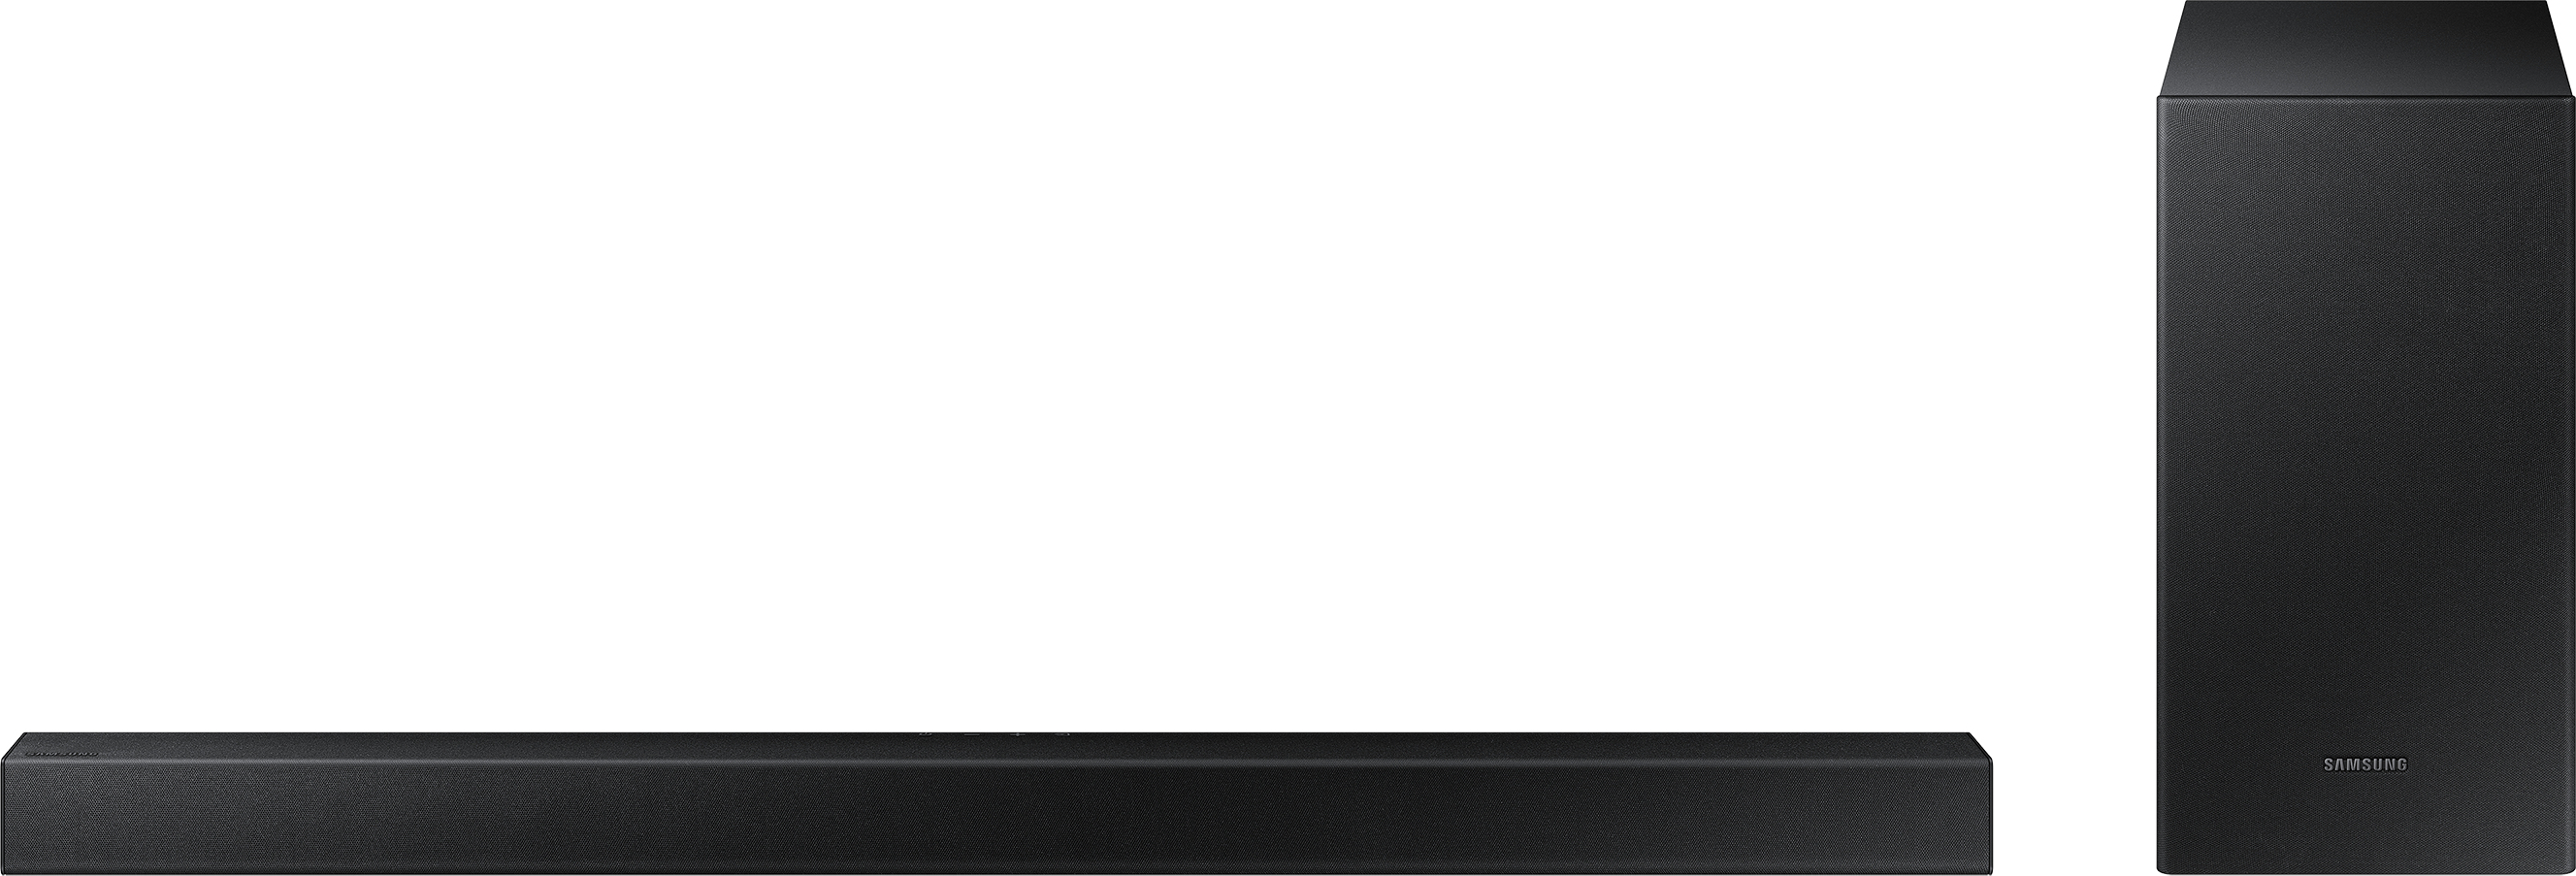 Samsung HW-T450 altavoz soundbar 2.1 canales 200 W Negro